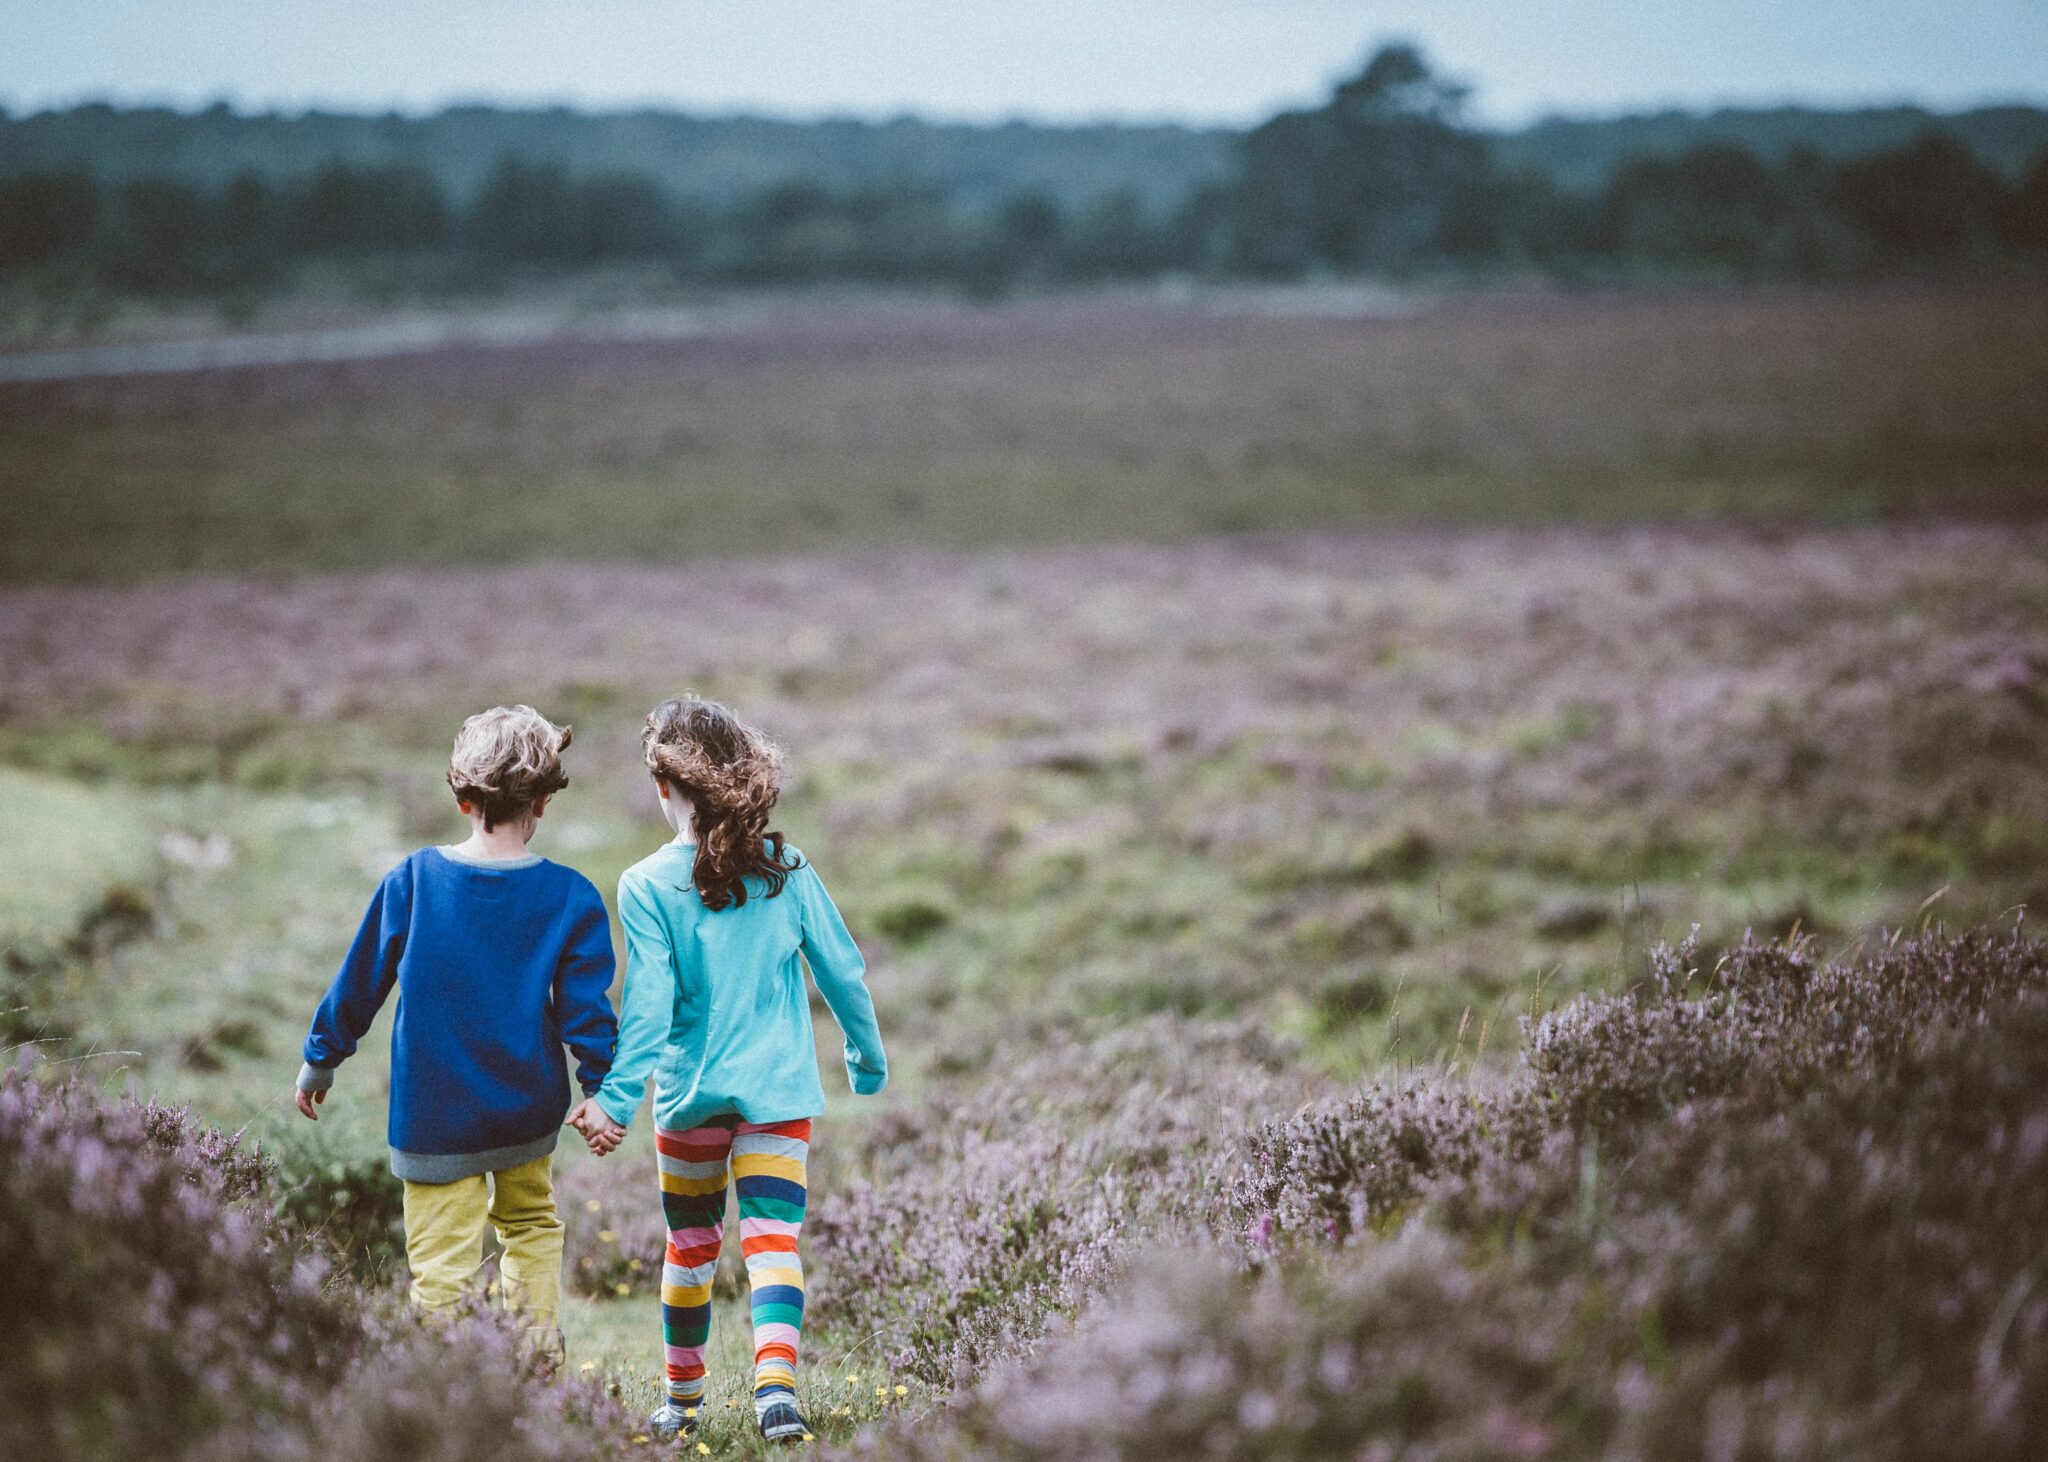 Children walking in a field | Photo by Annie Spratt on Unsplash